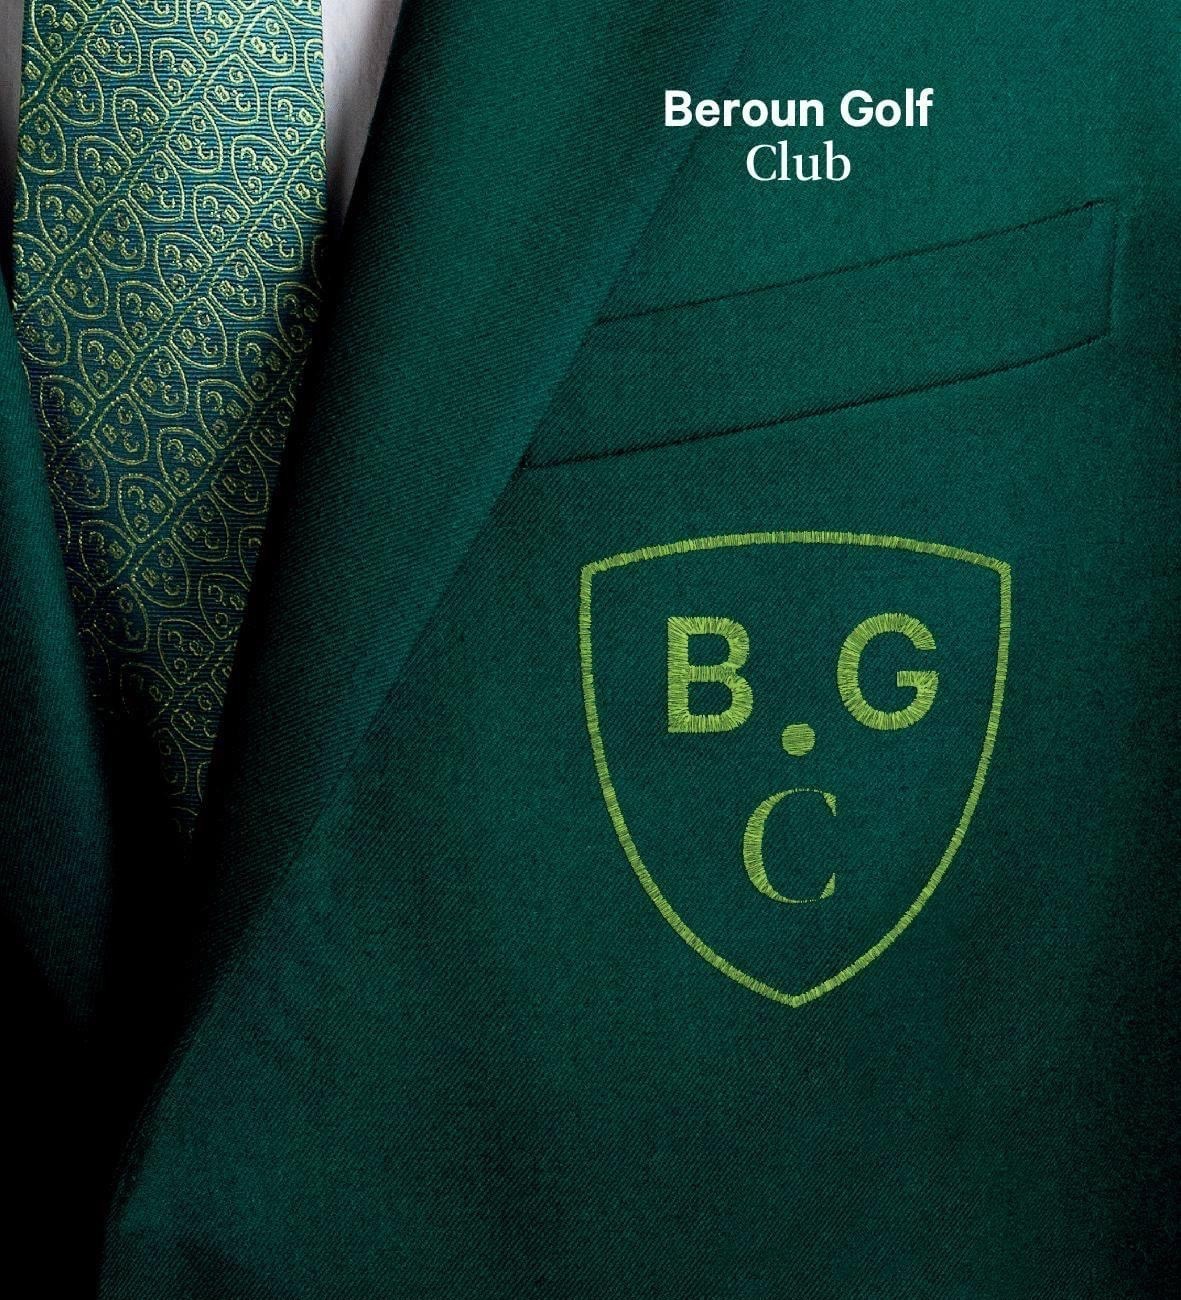 Přihláška ke členství do Royal Beroun Golf club